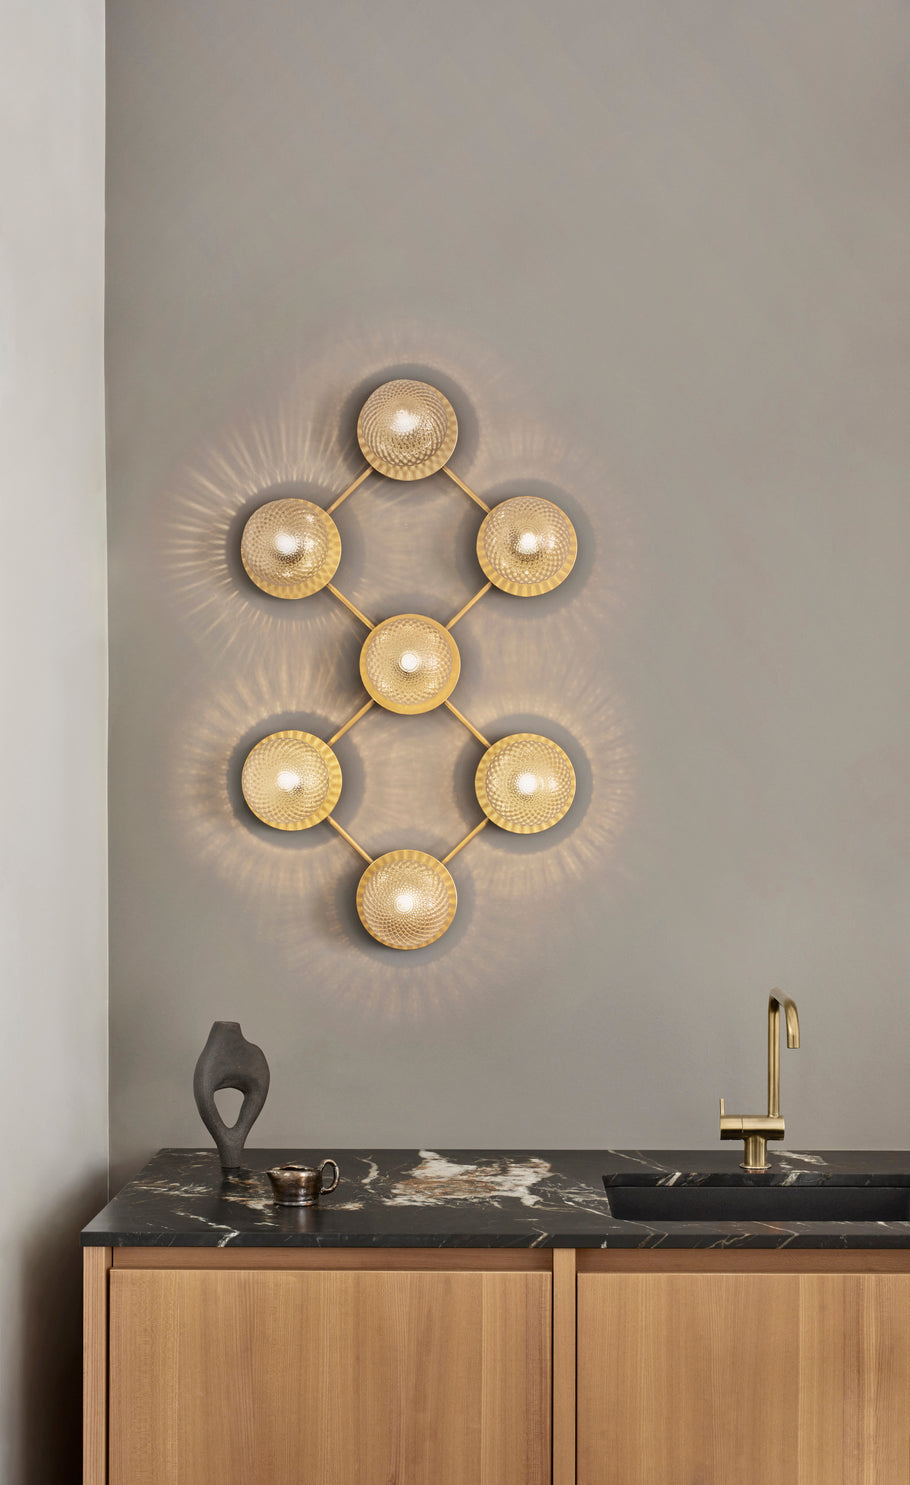 Væglampe med lampeskærme af klart optikglas og gylden fatning og stel, hængende på væg ved køkkenbord